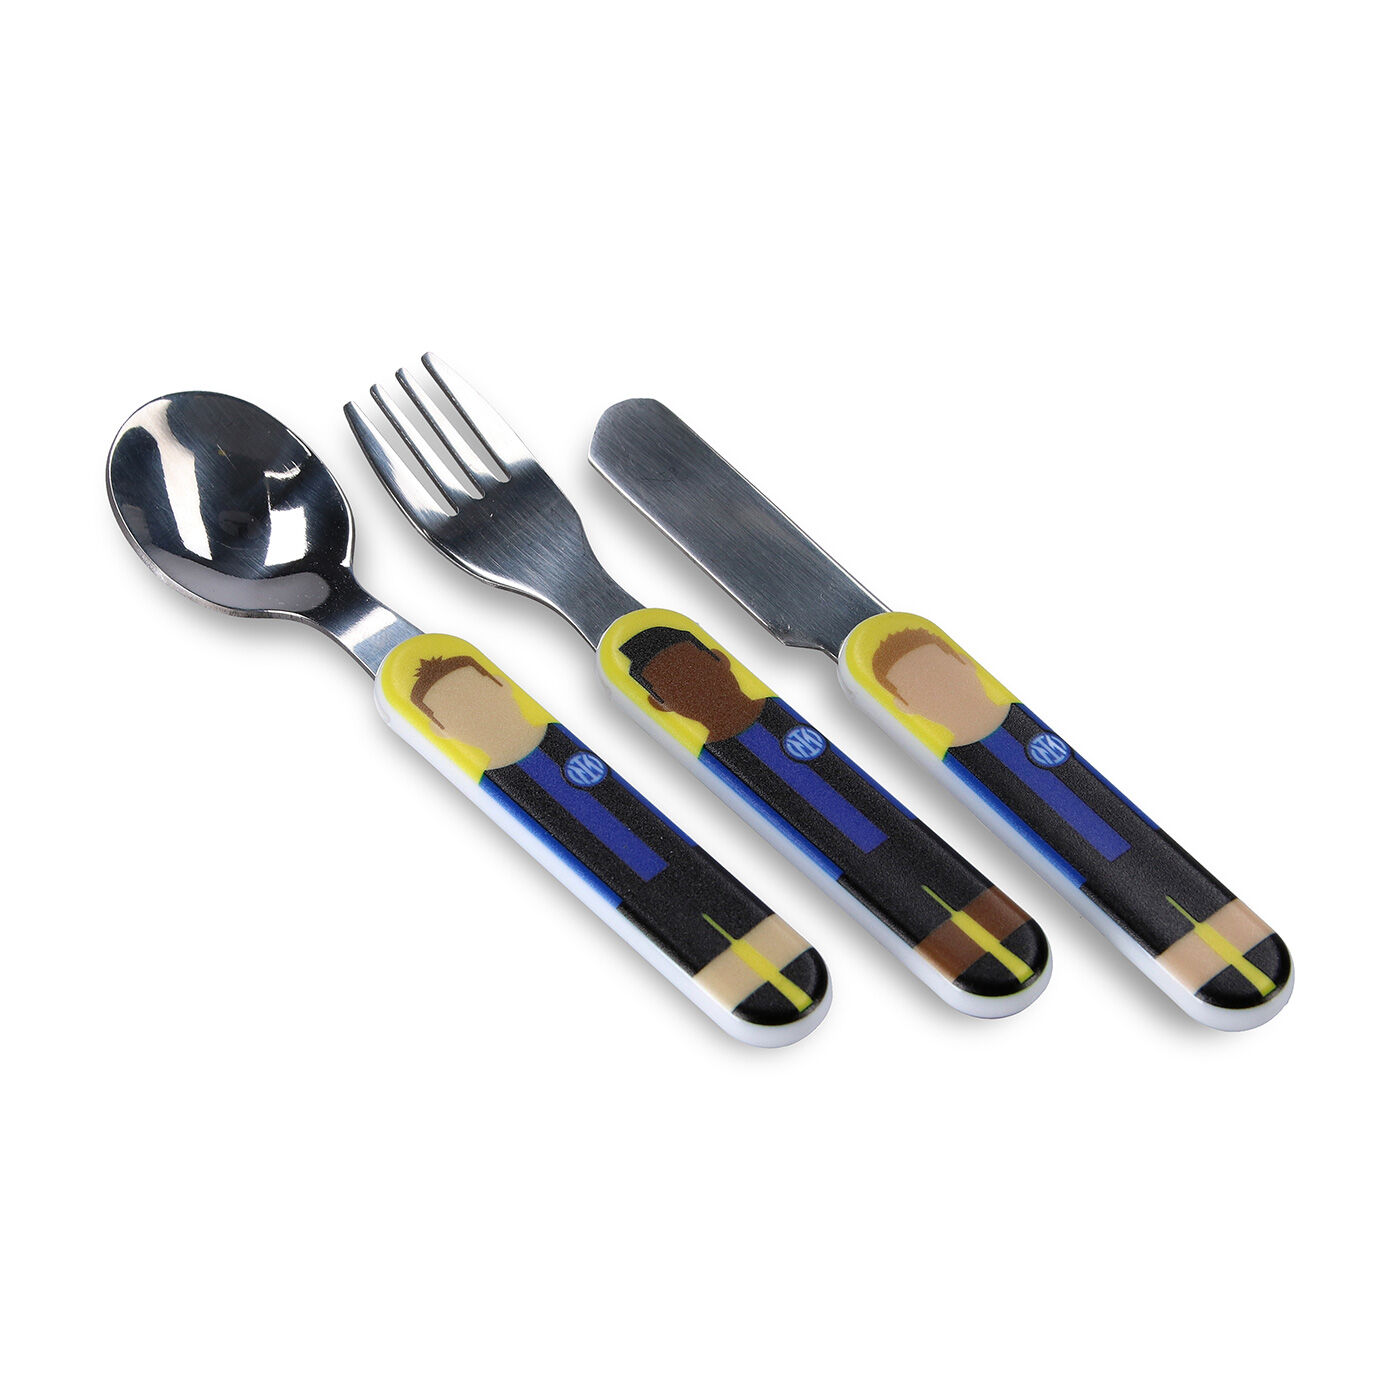 ② Couvert de découpe , couteau et fourchette vintage — Cuisine